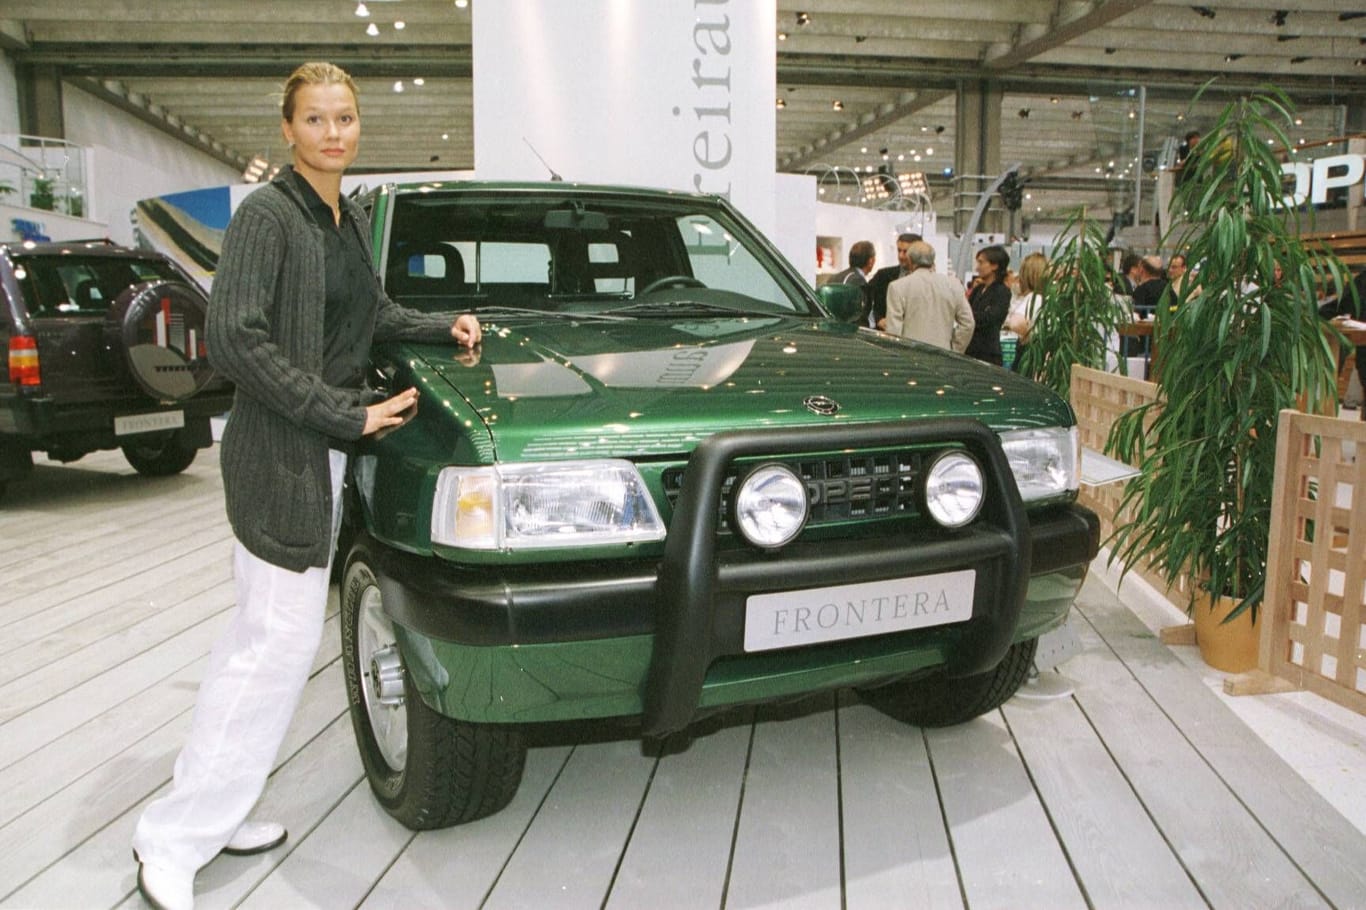 Die damalige Schwimmerin Franziska van Almsick auf der IAA am Stand ihres Sponsors Opel neben dem Frontera.